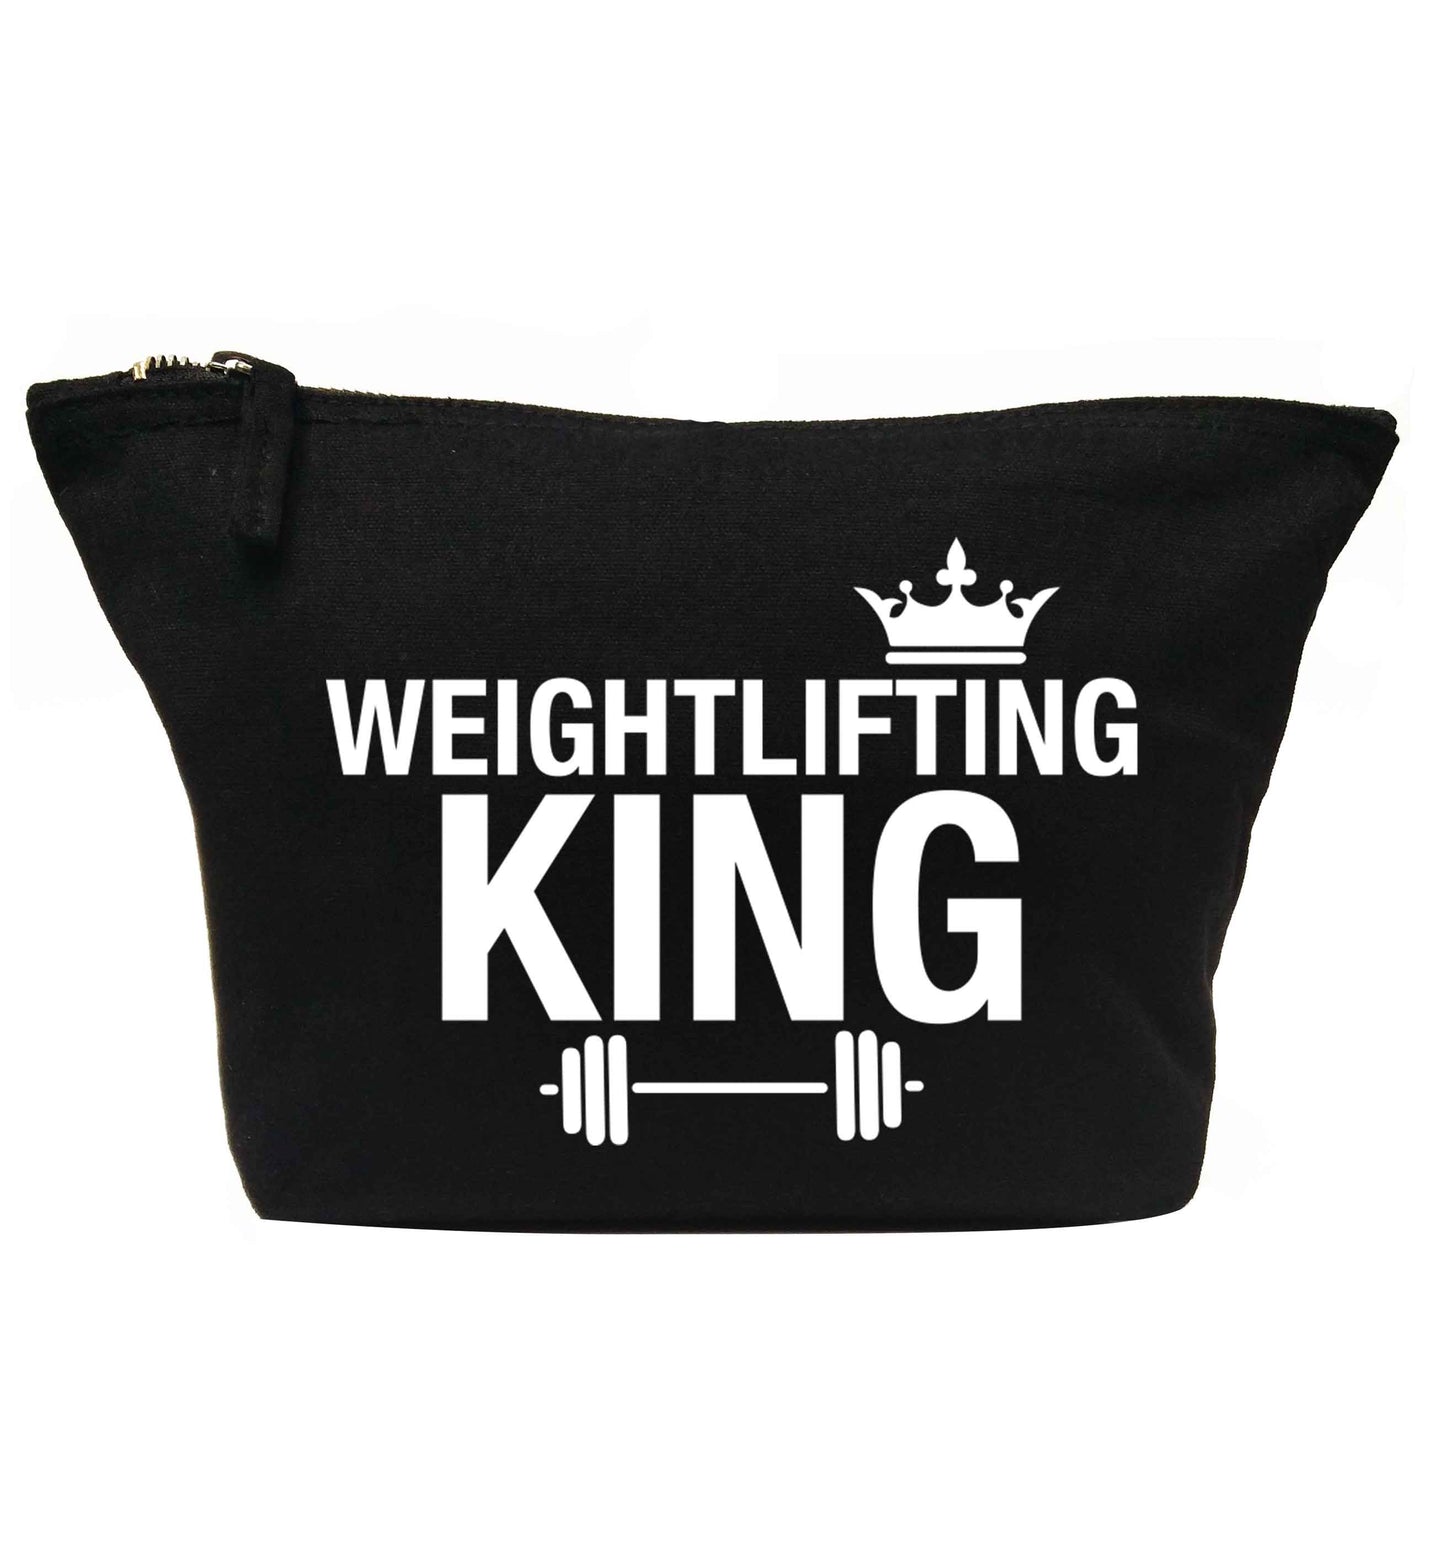 Weightlifting king | makeup / wash bag